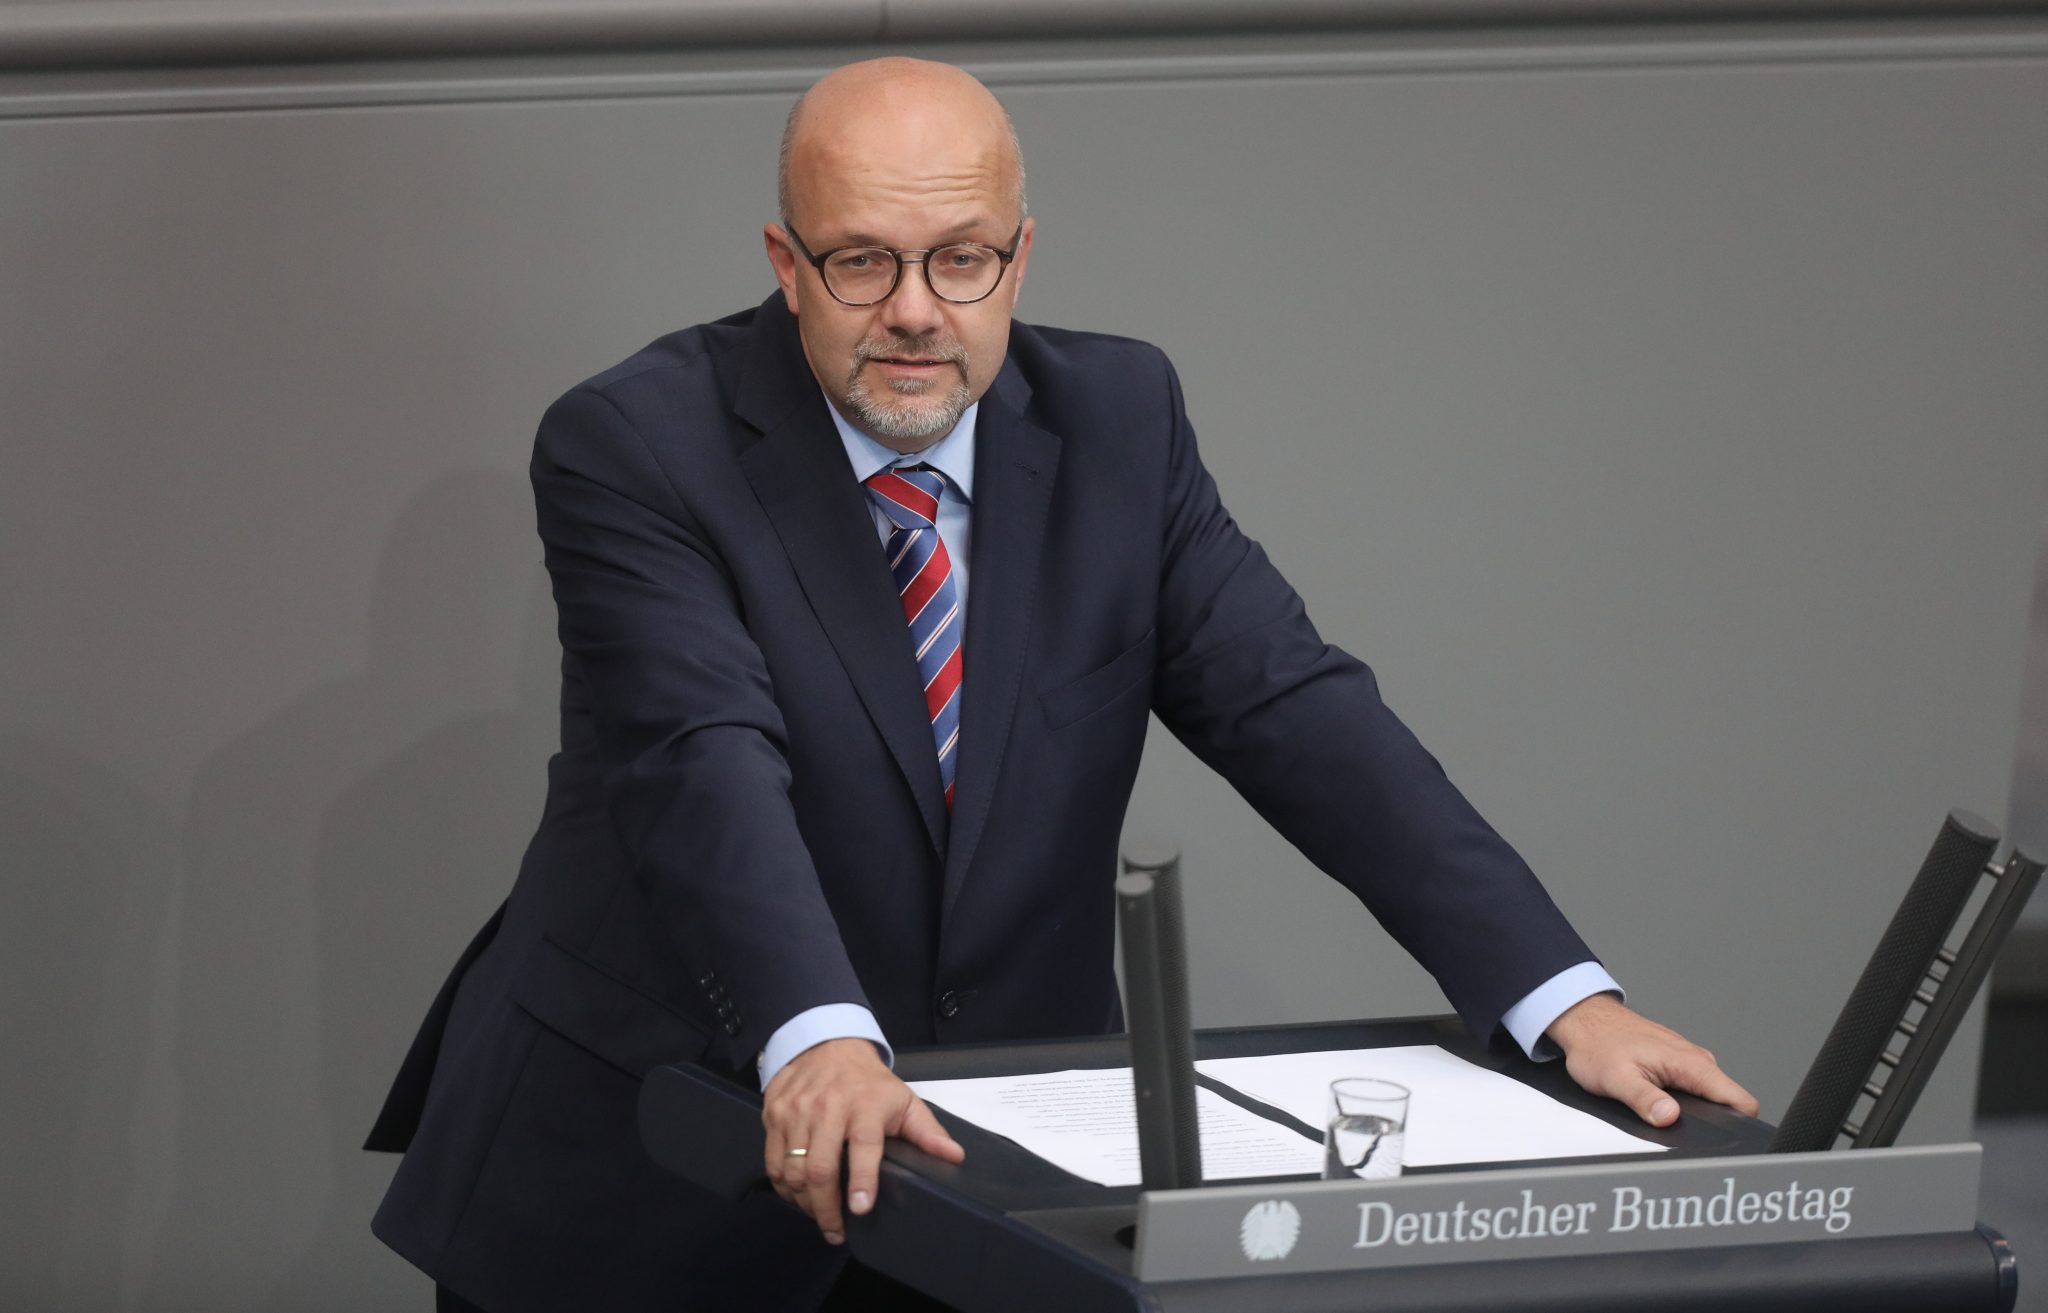 Der verteidigungspolitische Sprecher der SPD, Fritz Felgentreu, ist zurückgetreten Foto: picture alliance/dpa | Jörg Carstensen